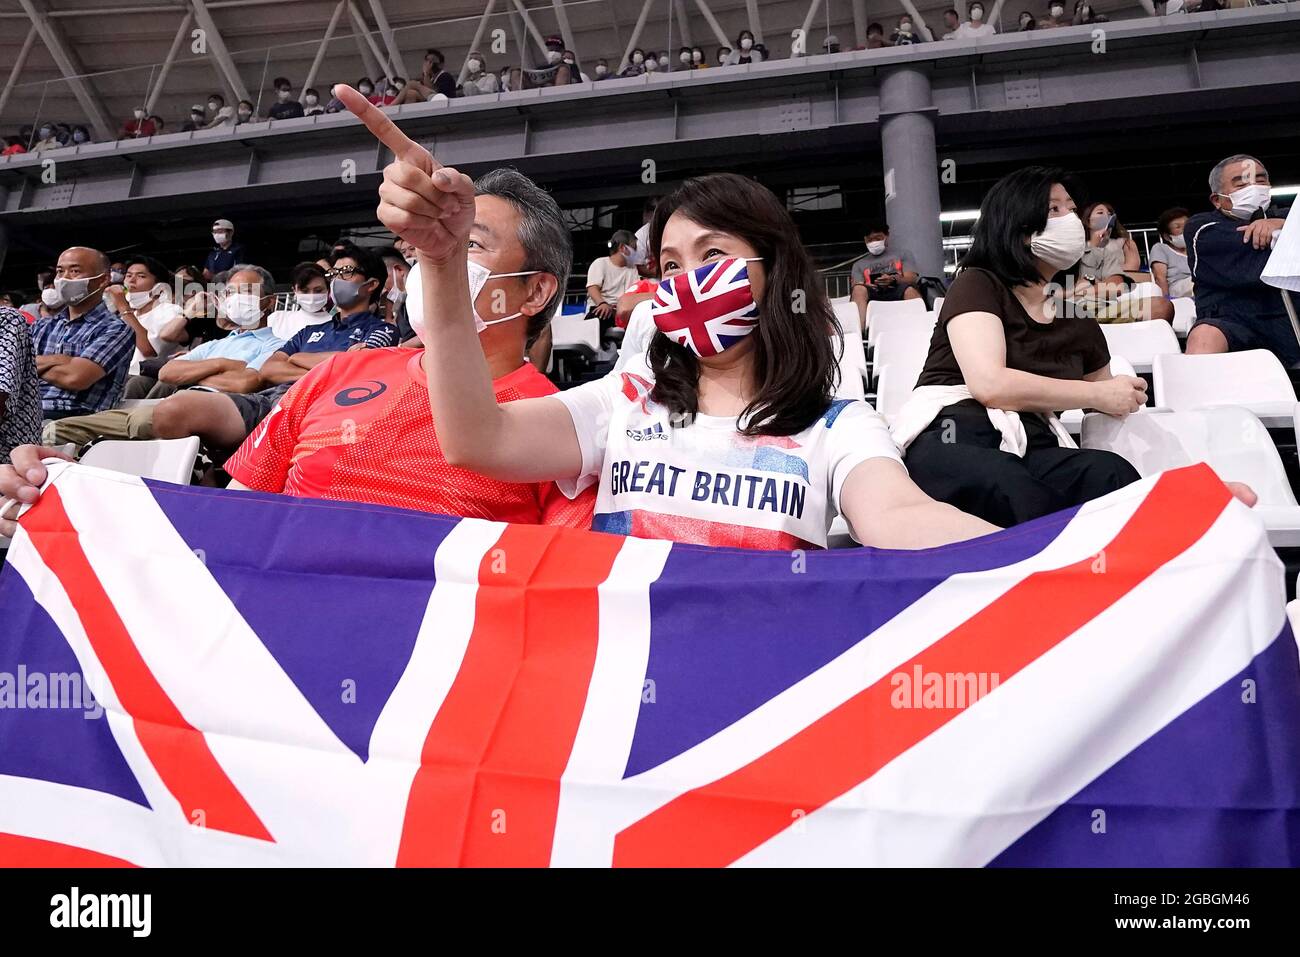 Les fans de Grande-Bretagne dans les stands regardent l'action pendant le cyclisme sur piste à l'Izu Velodrome le douzième jour des Jeux Olympiques de Tokyo 2020 au Japon. Date de la photo: Mercredi 4 août 2021. Banque D'Images